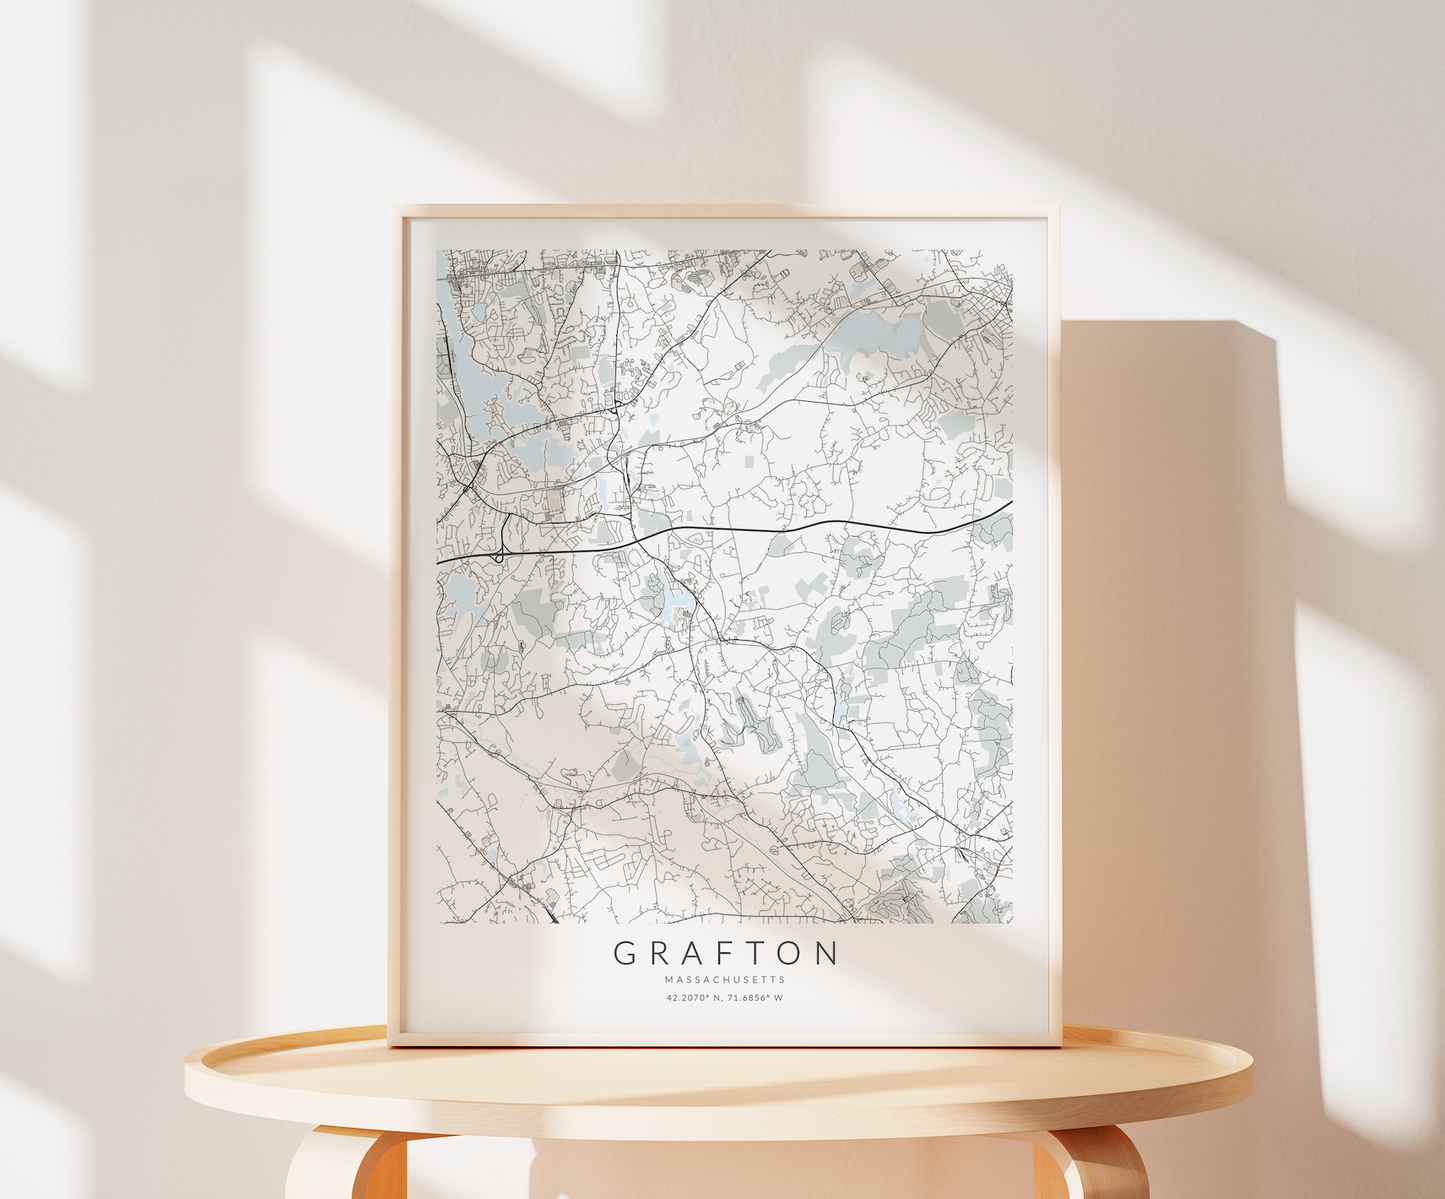 Grafton Map Print